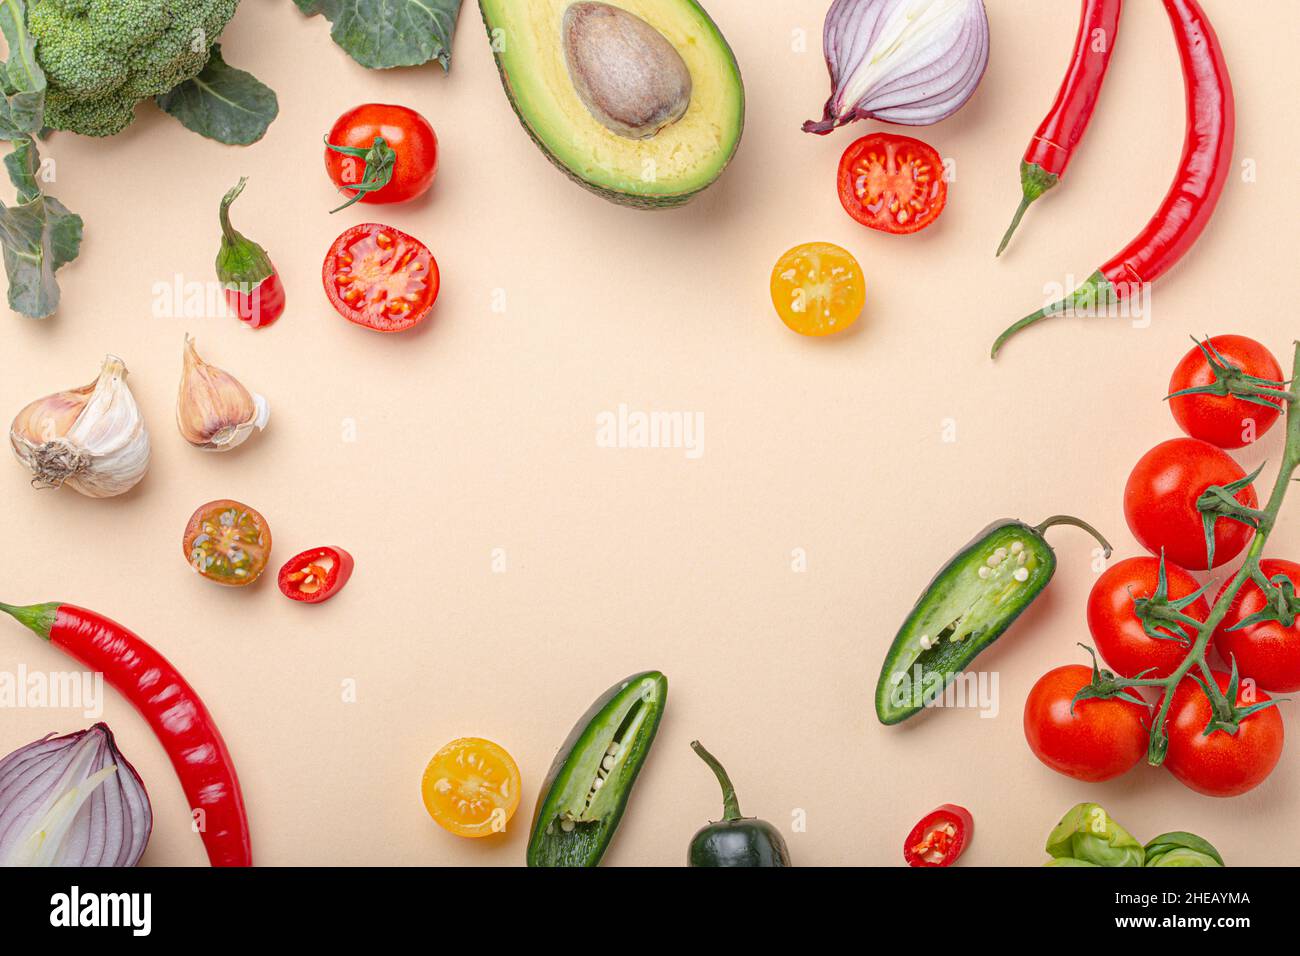 Cuisine créative concept d'aliments biologiques sains fond de fruits et légumes colorés Banque D'Images